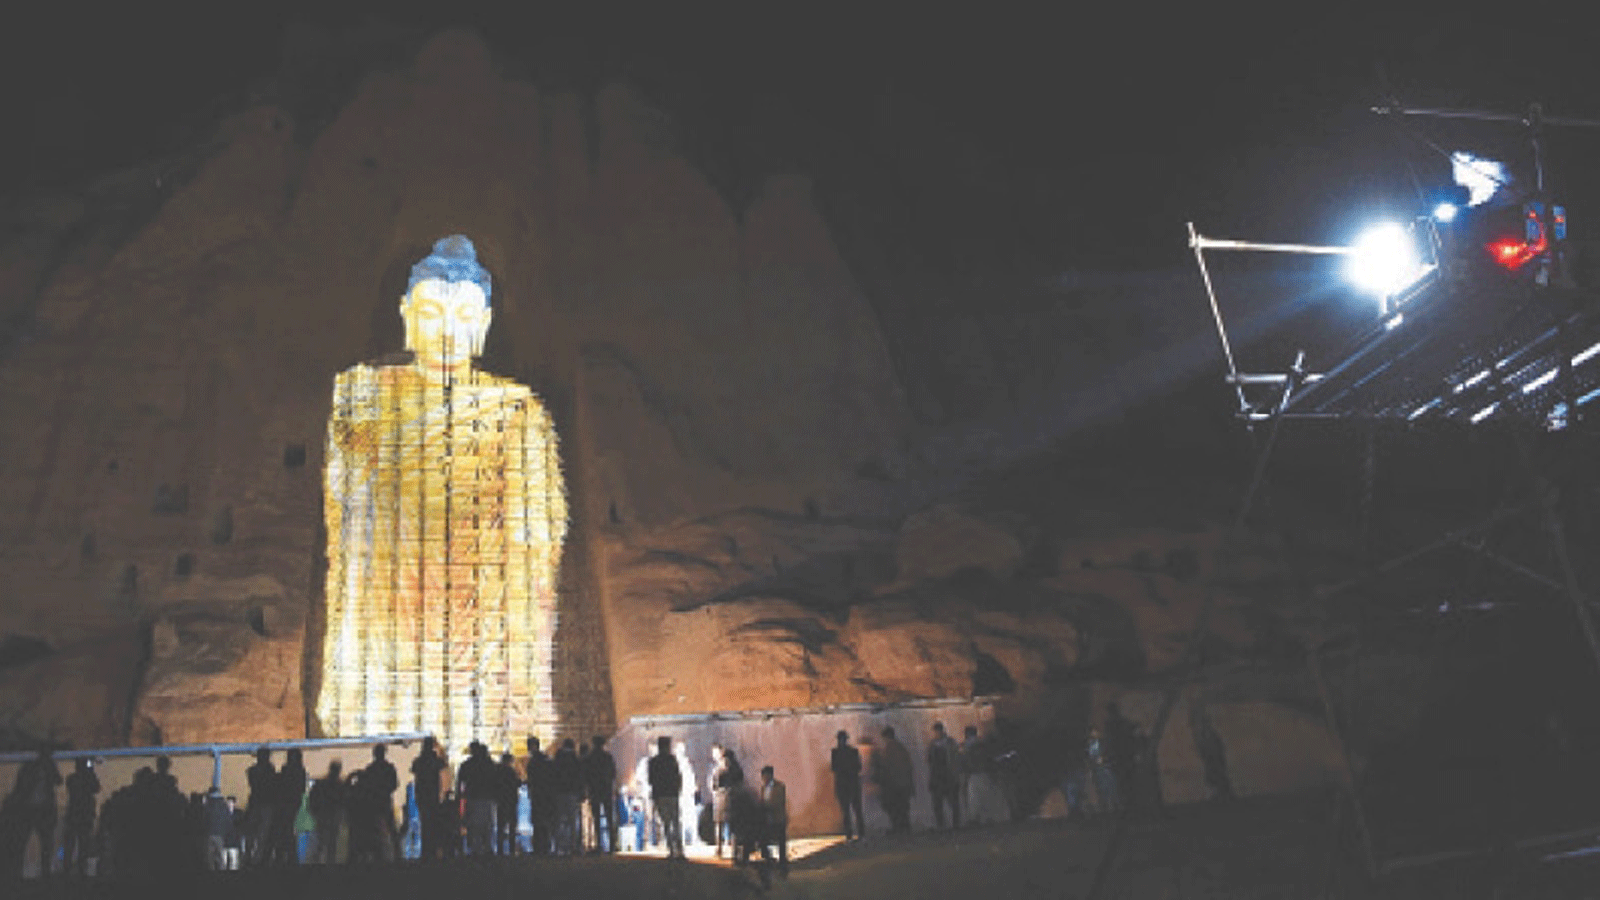 عرضٌ ثلاثي الأبعاد في الموقع حيث وقفت تماثيل بوذا في باميان قبل تدميرها من قبل طالبان في مارس 2001